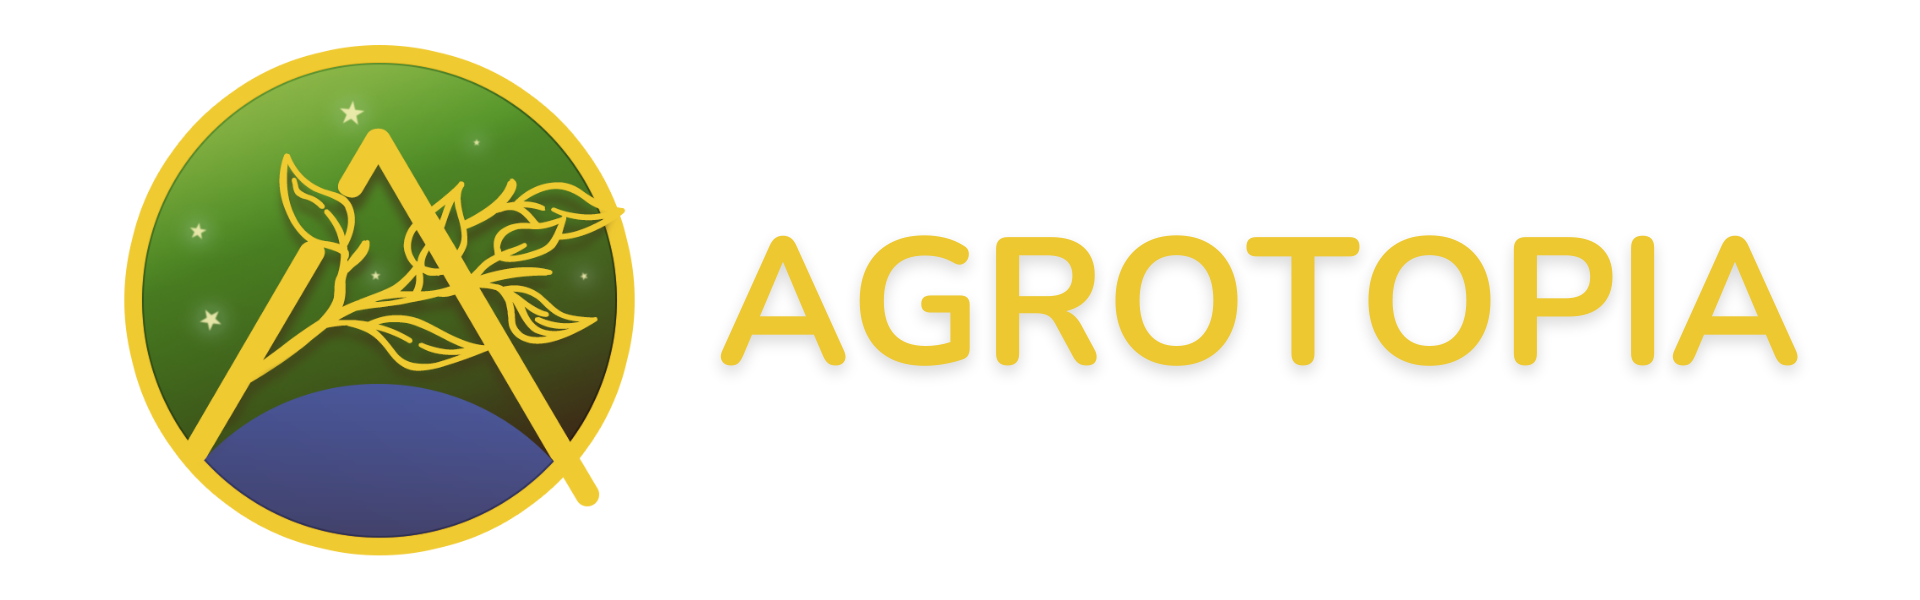 Agrotopia